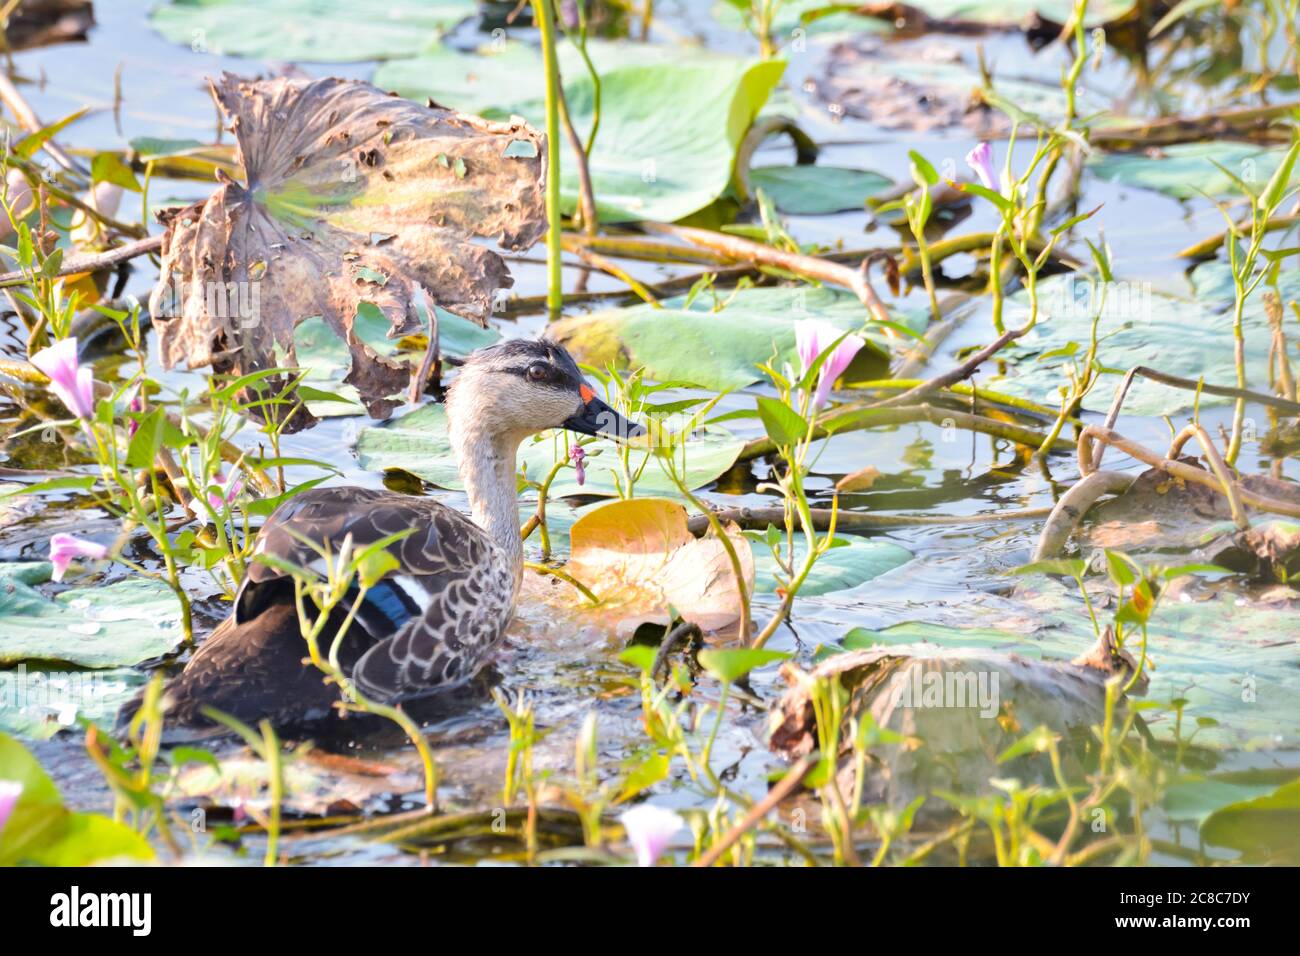 L'Indiano spot-fatturati Duck è una grande dedicarmi duck, che è un non-migratori anatra di allevamento in tutta zone umide d'acqua dolce nel subcontinente indiano. Foto Stock